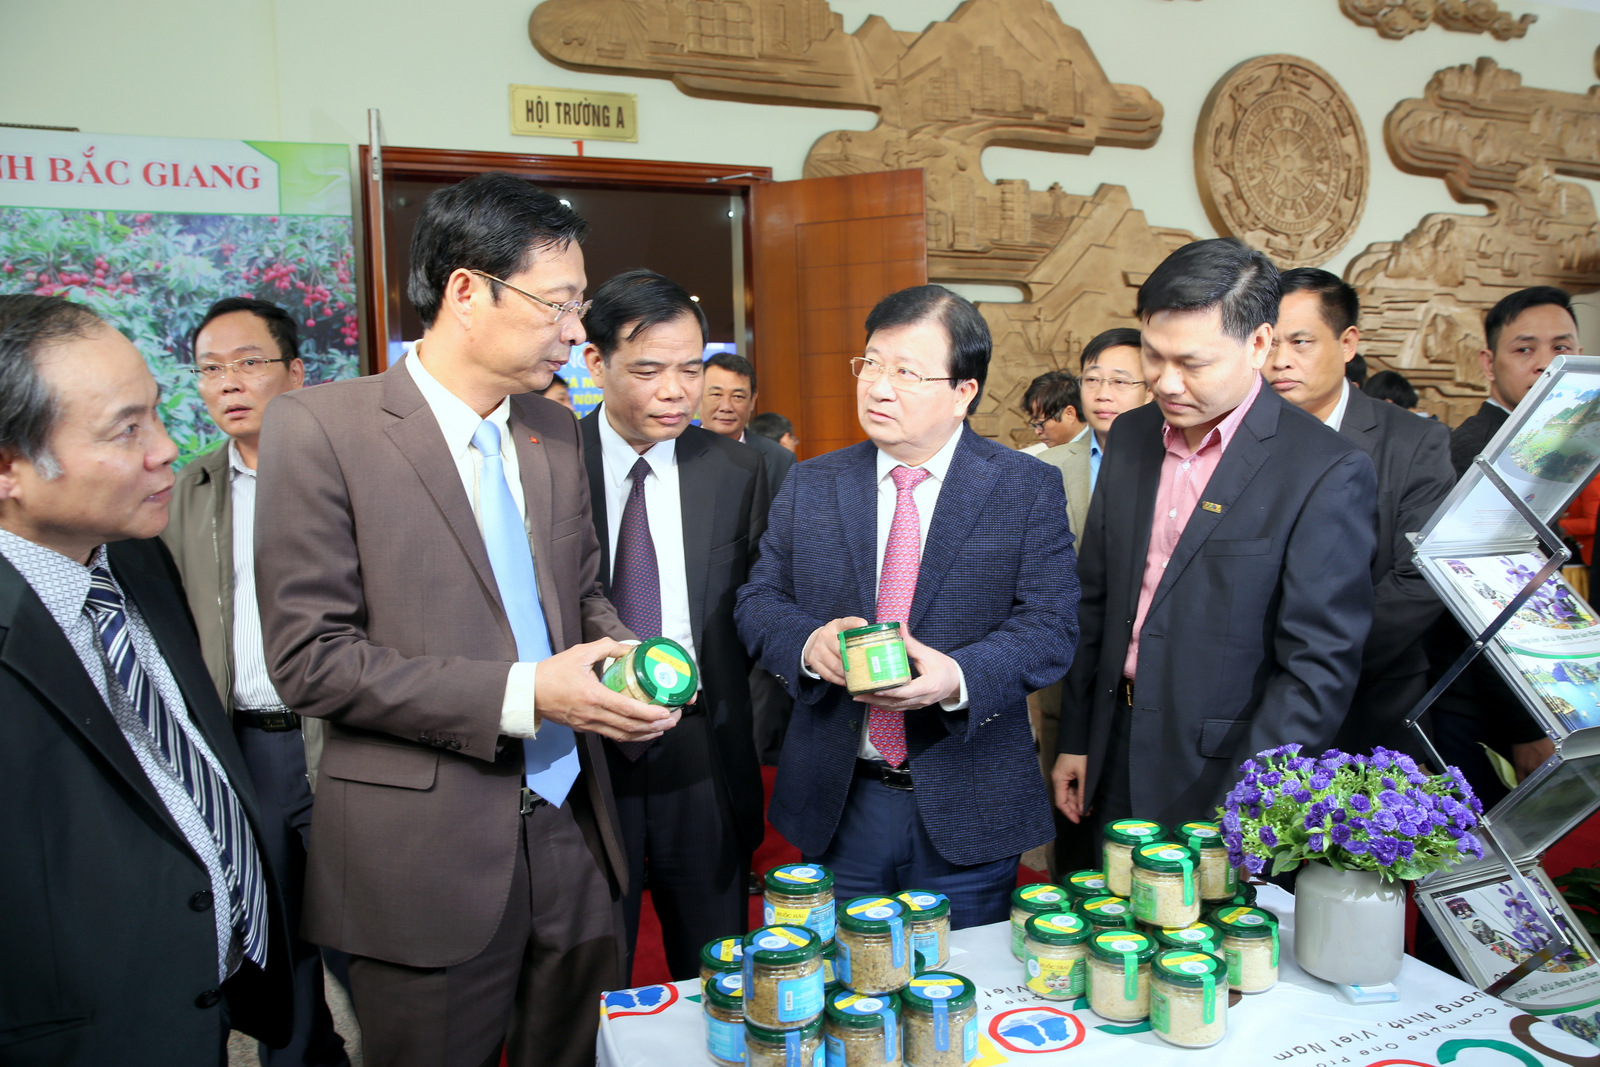  Phó Thủ tướng Trịnh Đình Dũng cùng lãnh đạo Bộ NN&PTNT, tỉnh Quảng Ninh đánh giá cao nhiều sản phẩm đặc trưng, đặc sản của các địa phương trong tỉnh Quảng Ninh và một số địa phương lân cận. Ảnh: VGP